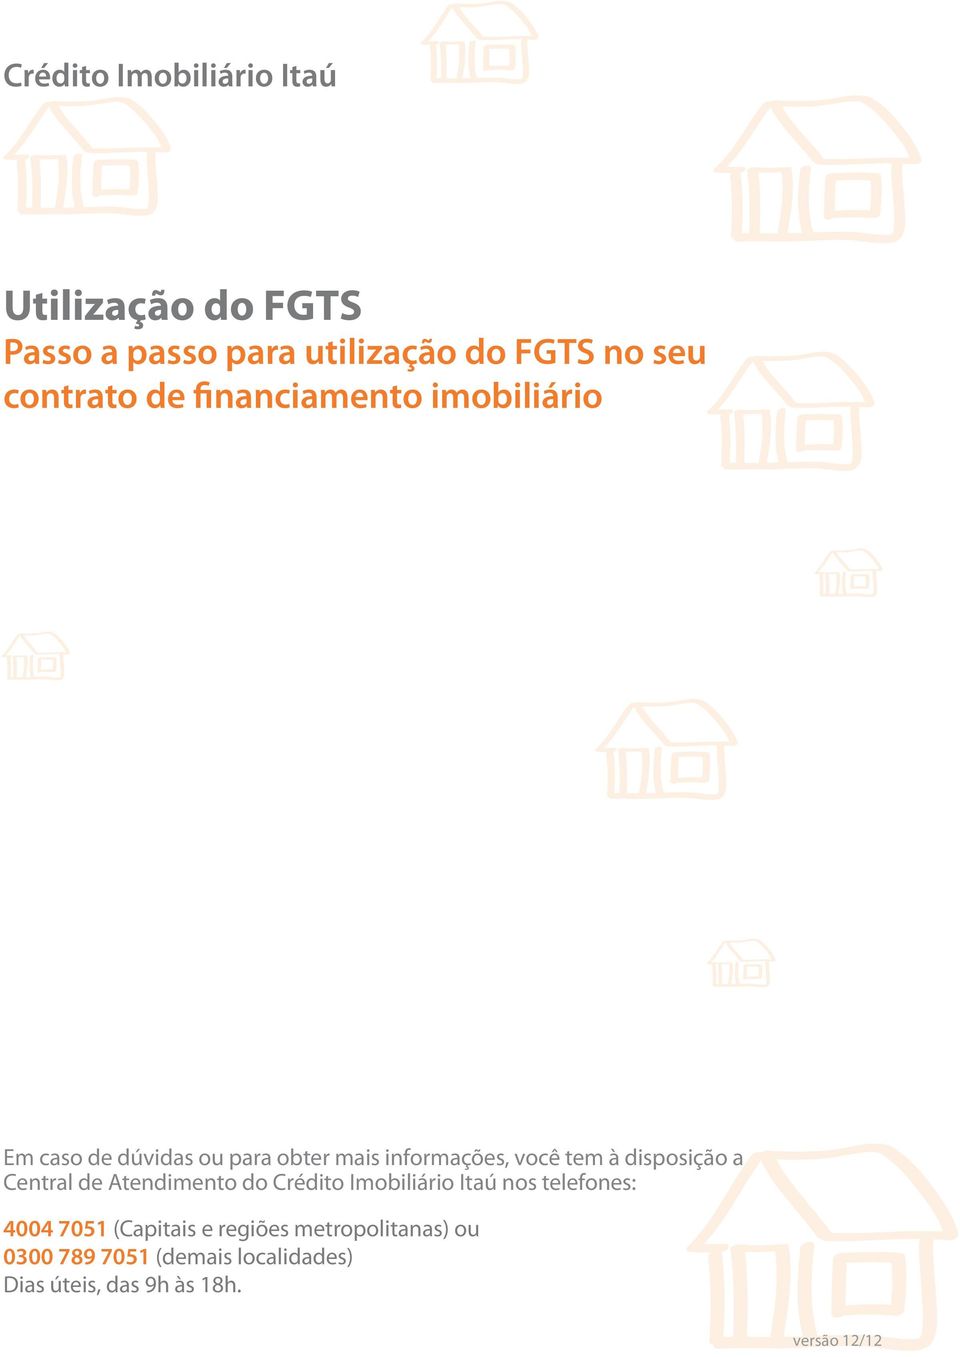 disposição a Central de Atendimento do Crédito Imobiliário Itaú nos telefones: 4004